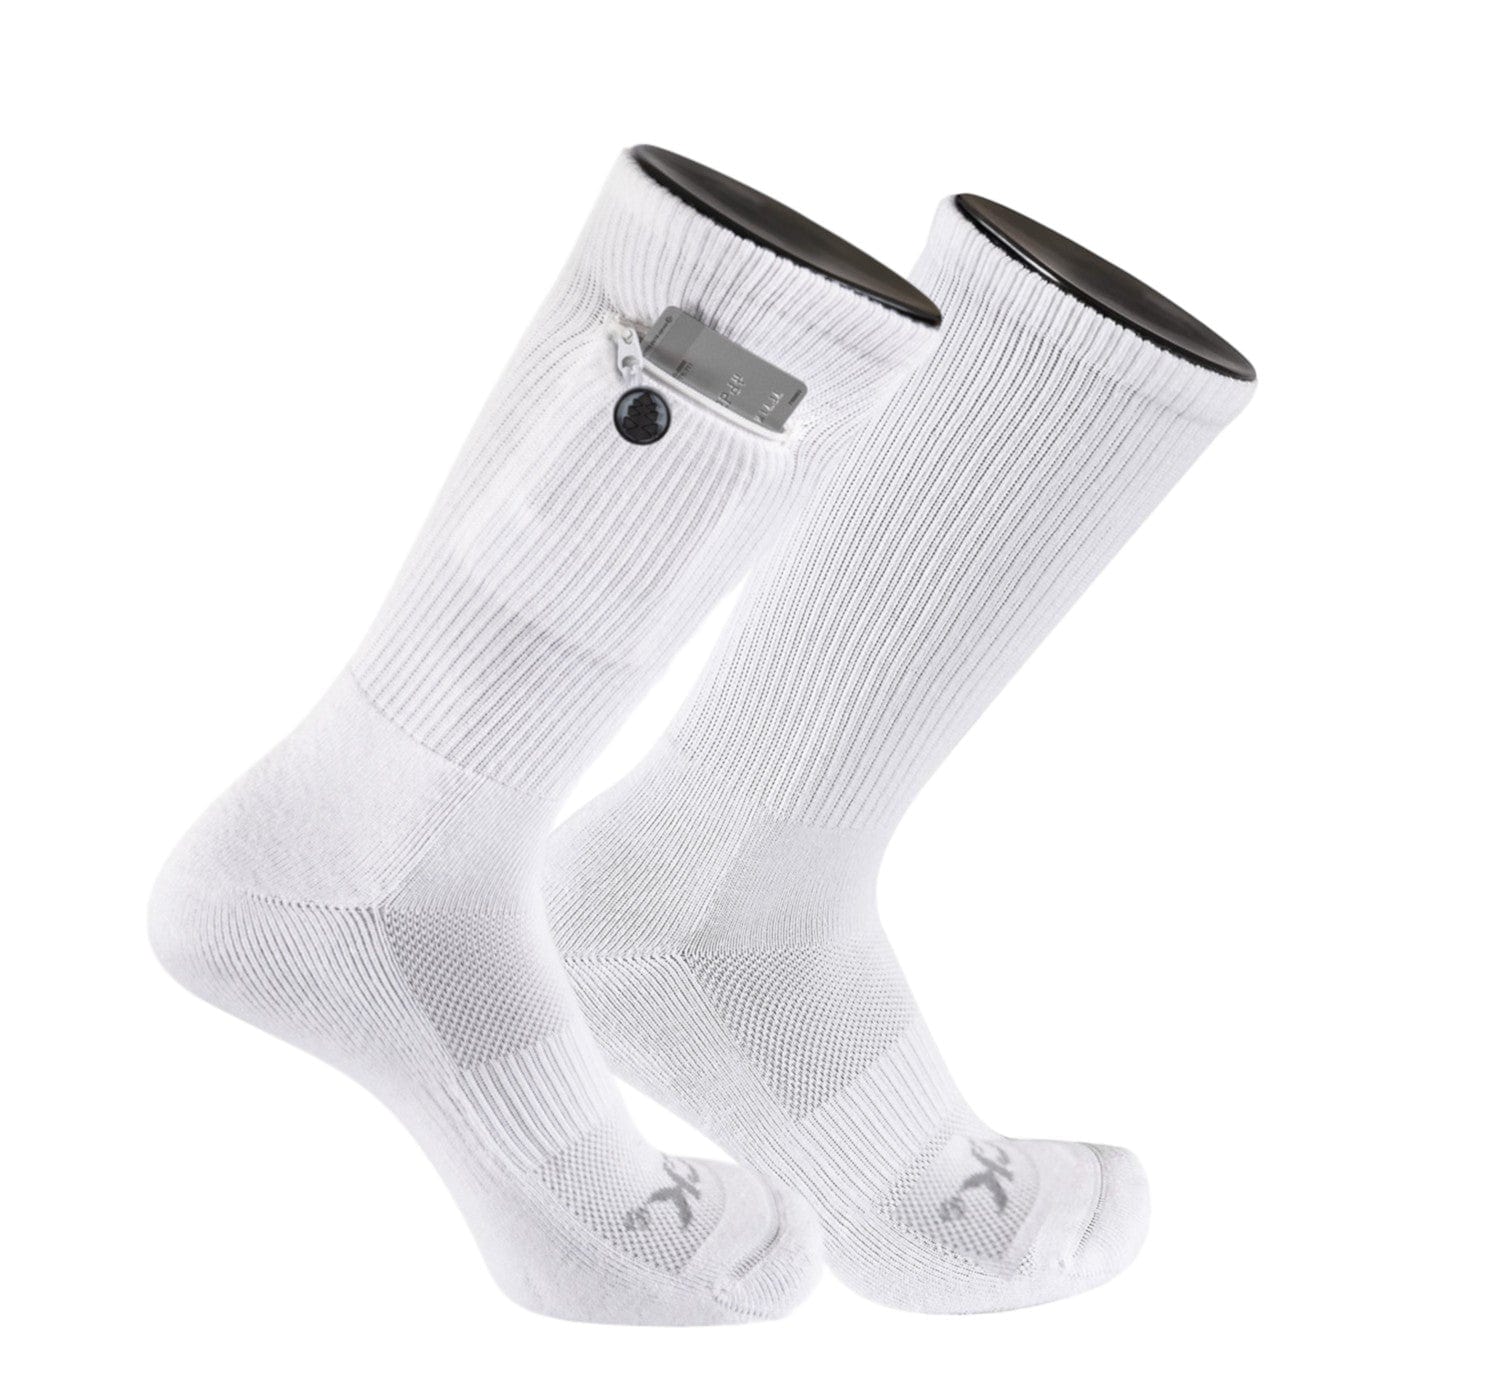 https://cdn.shopify.com/s/files/1/0547/4929/8875/files/iq-socks-zip-pocket-high-performance-crew-socks-39800657182935.jpg?v=1702940905